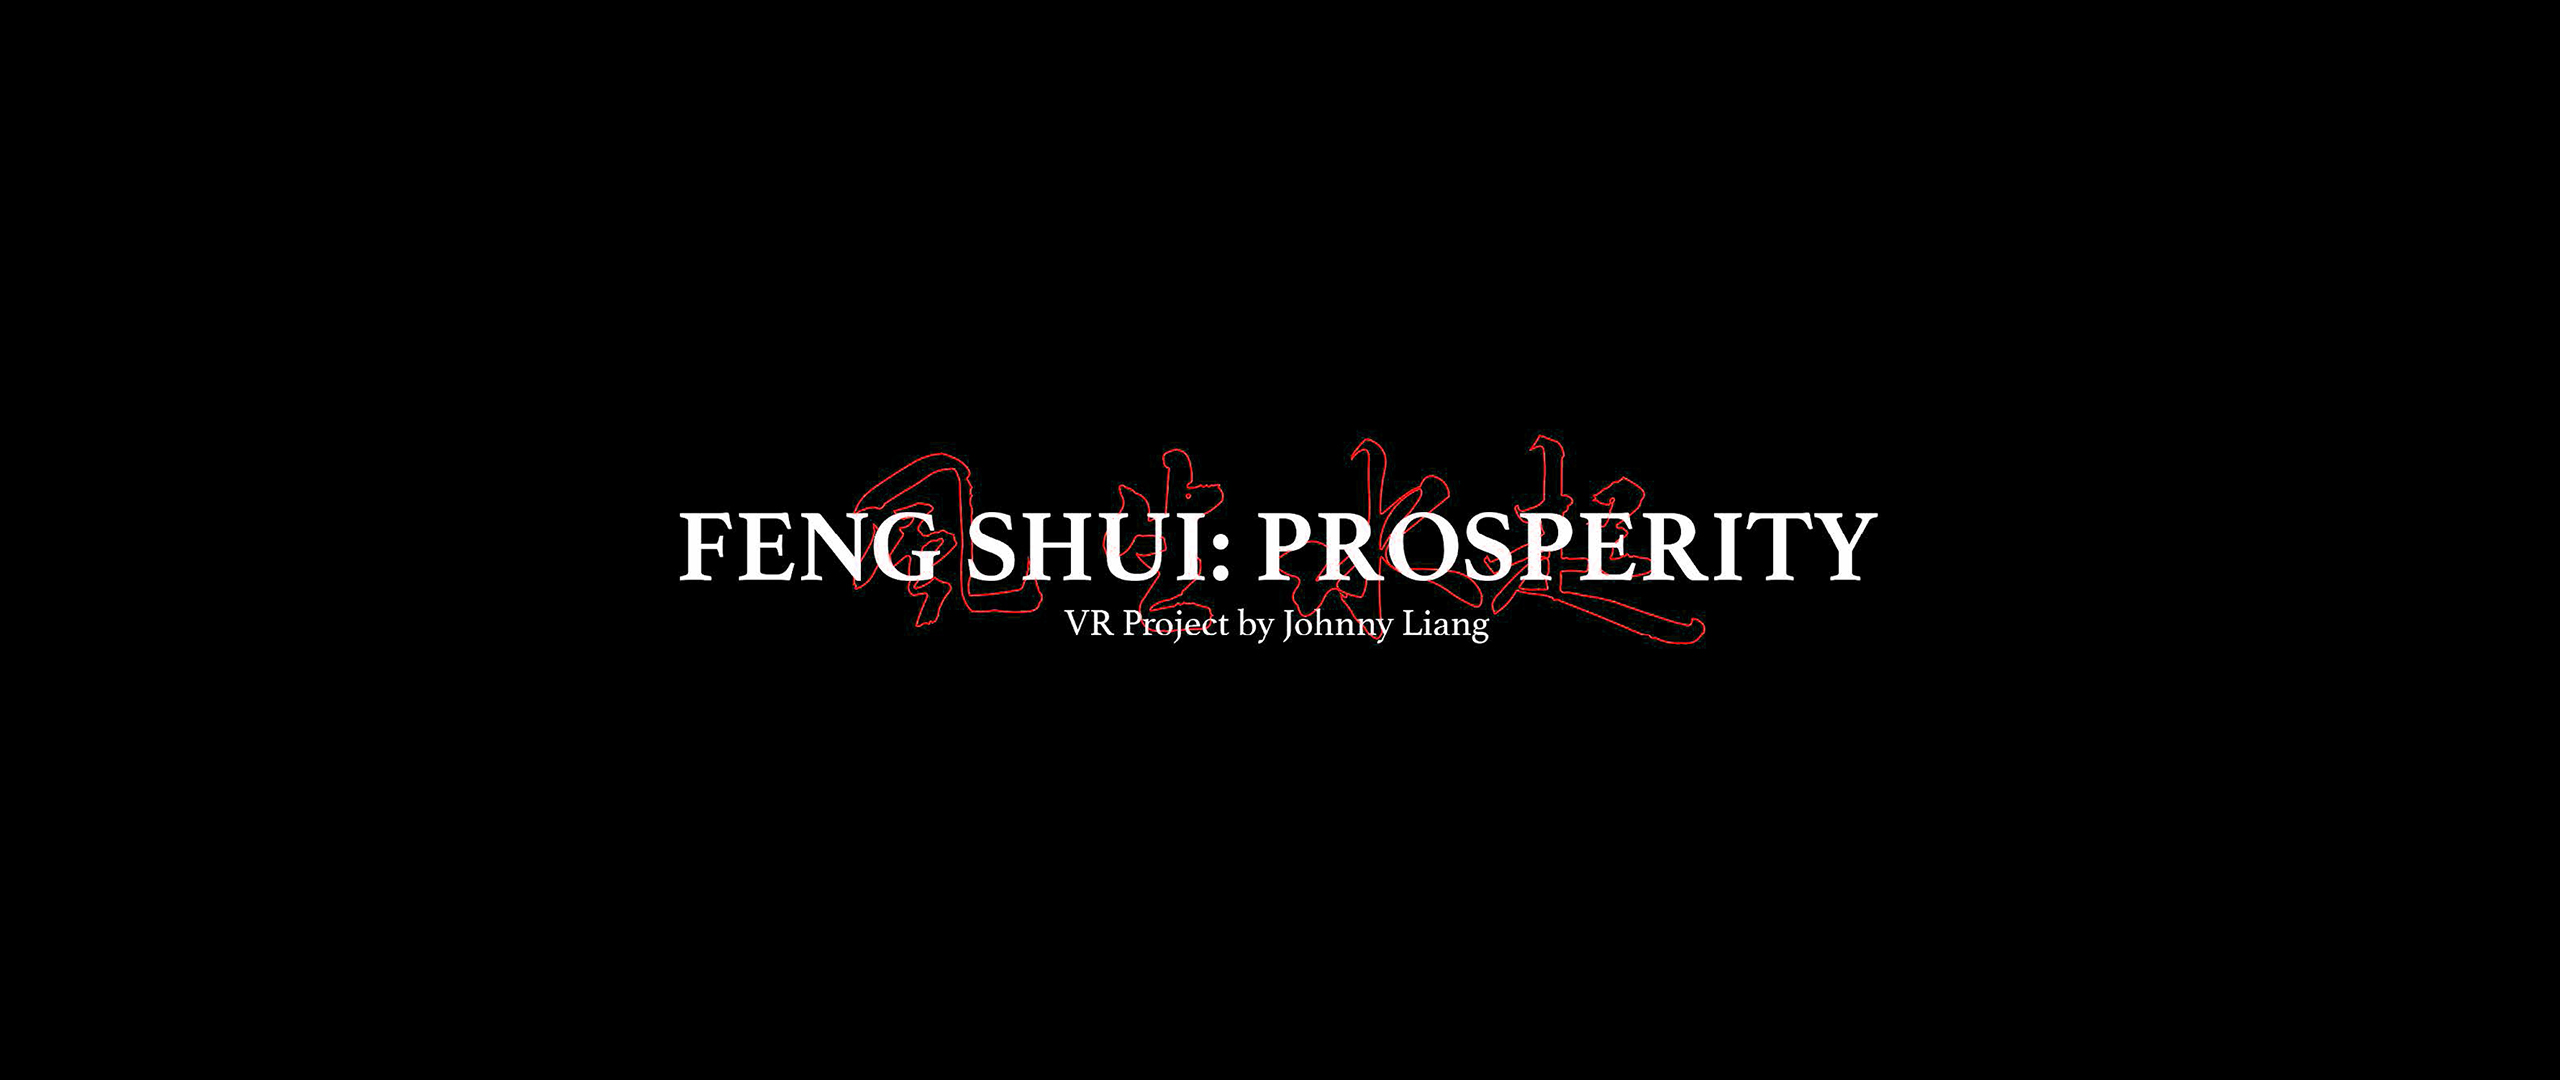 FENG SHUI: PROSPERITY - VR Project